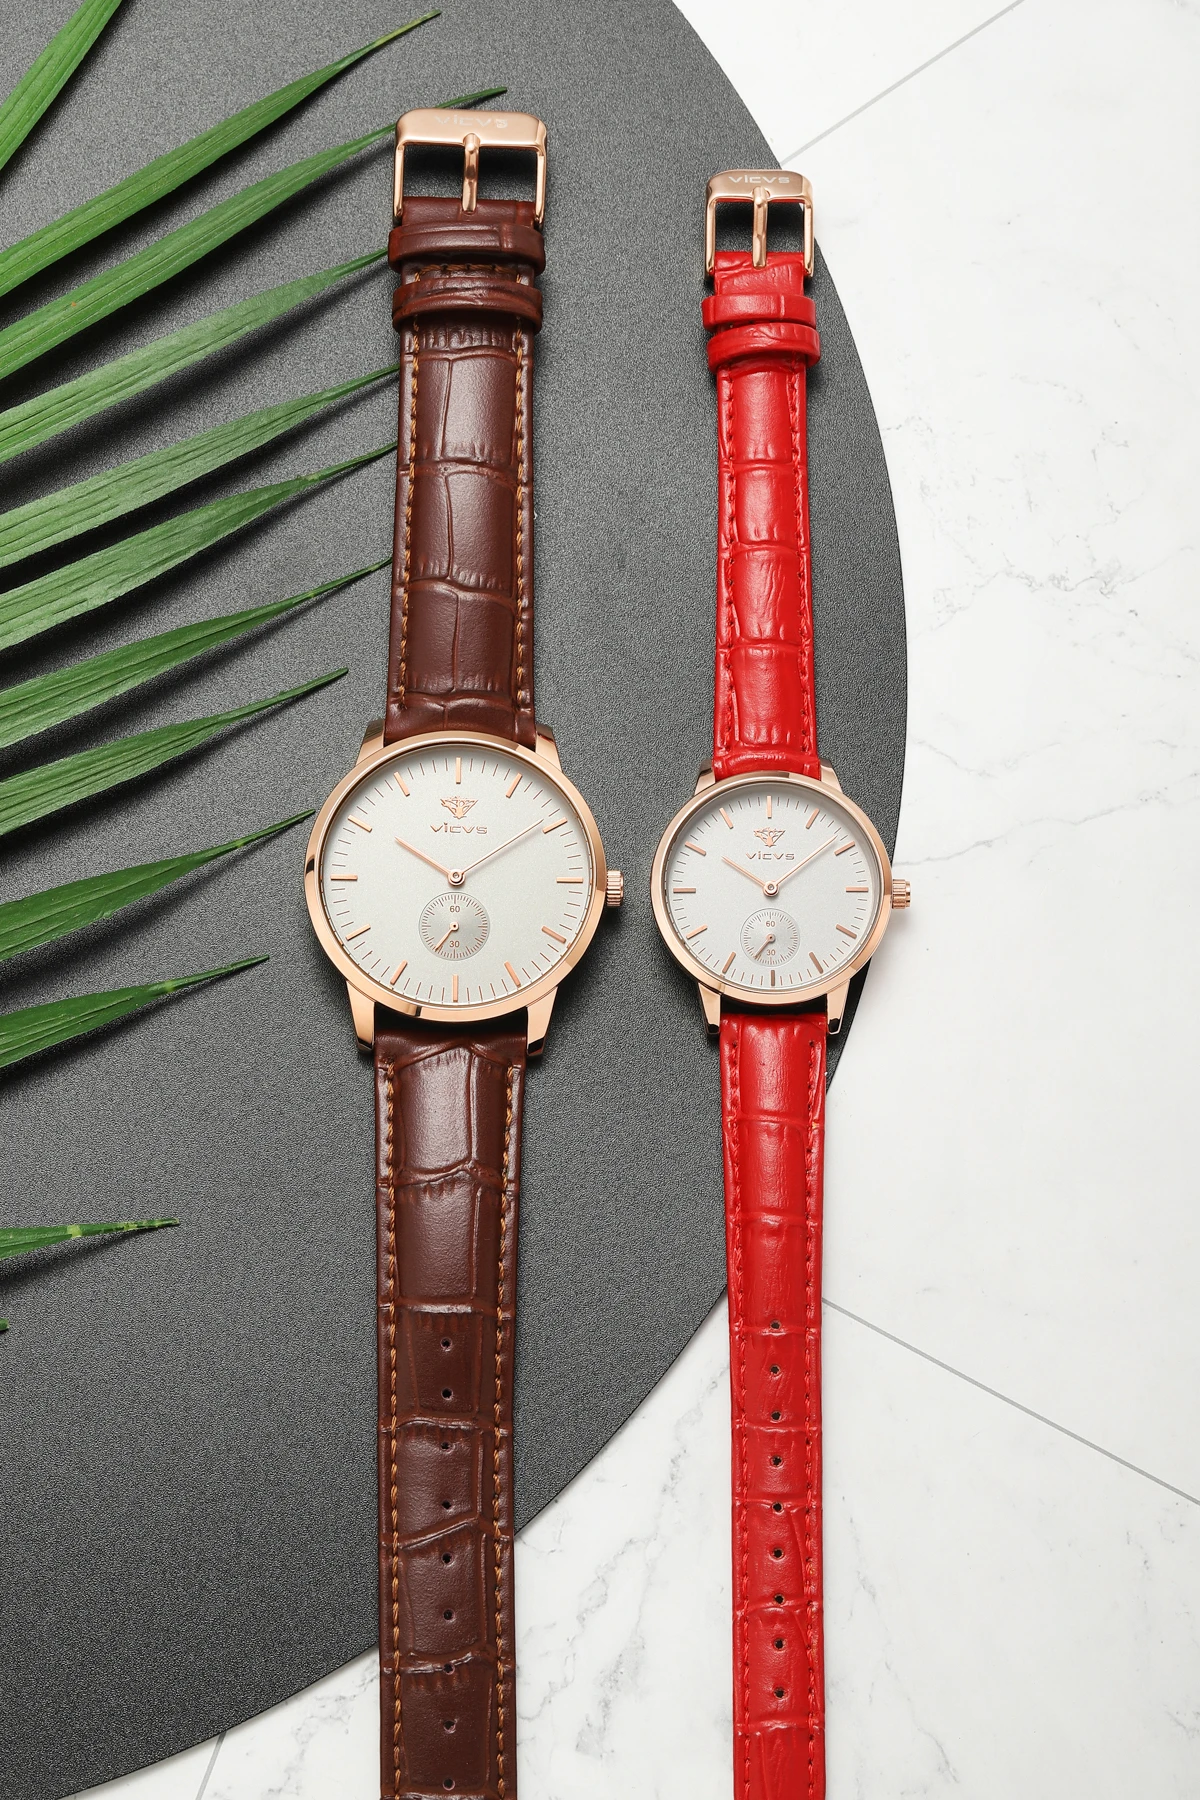 female watch Fashion Waterproof Sport Women Watches Red Ladies Luxury Leather Strap quartz wristwatches часы мужские enlarge